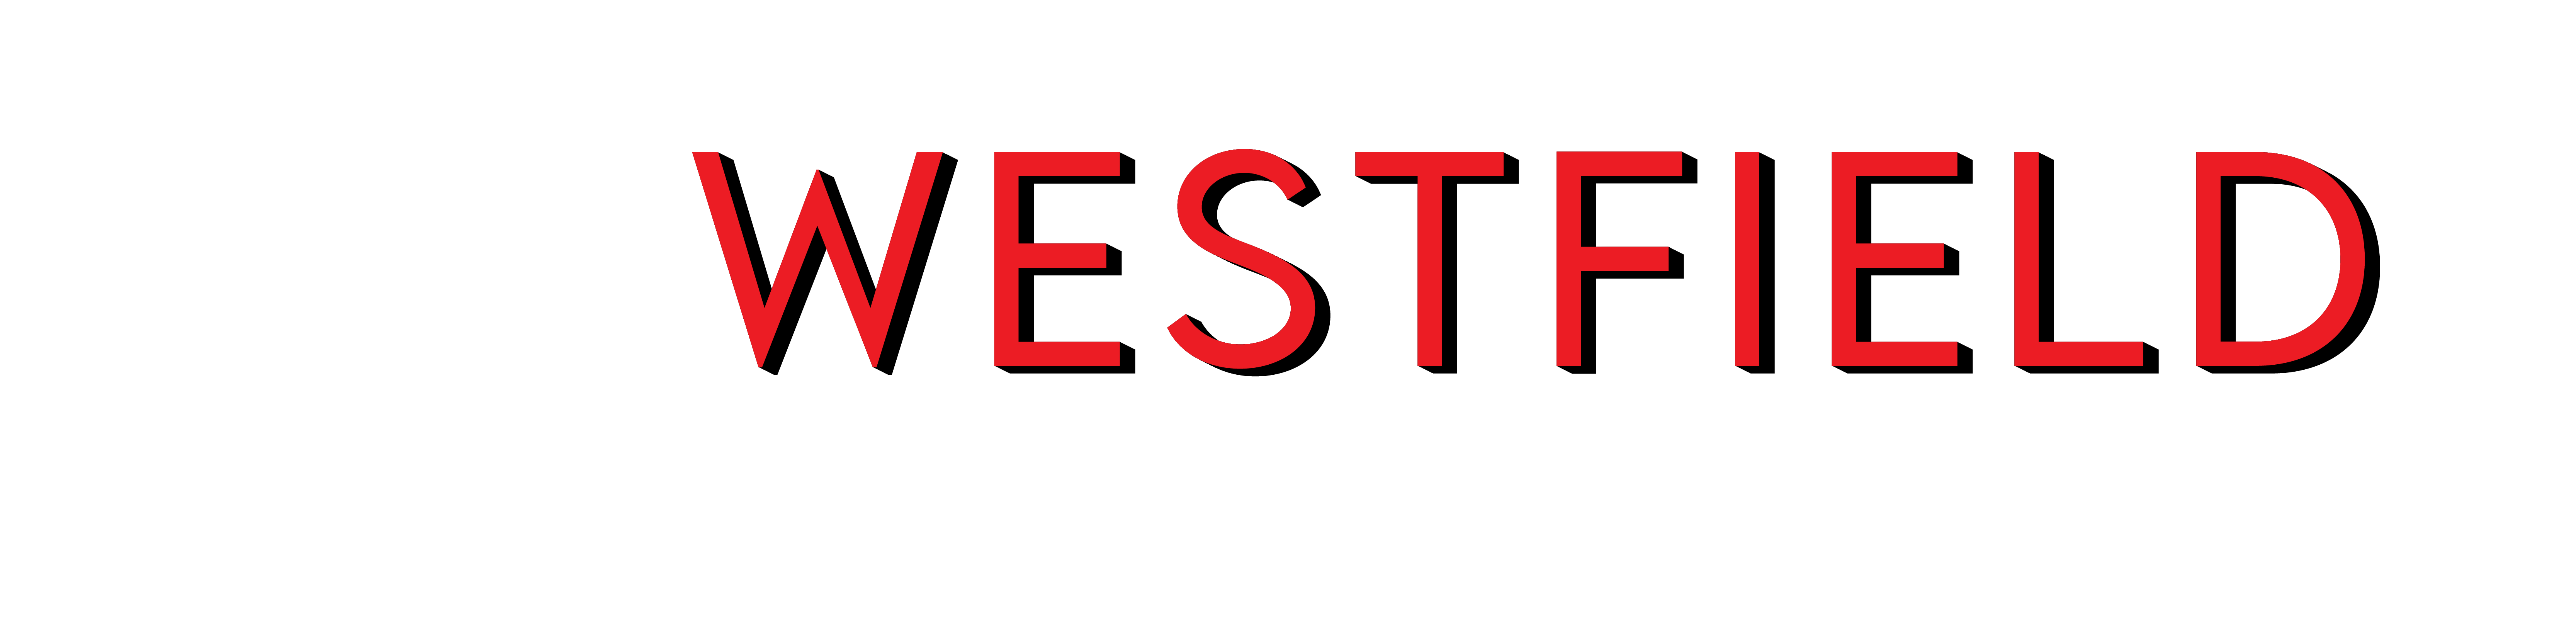 Westfield Band Logo_Full_Color_BlackBKG